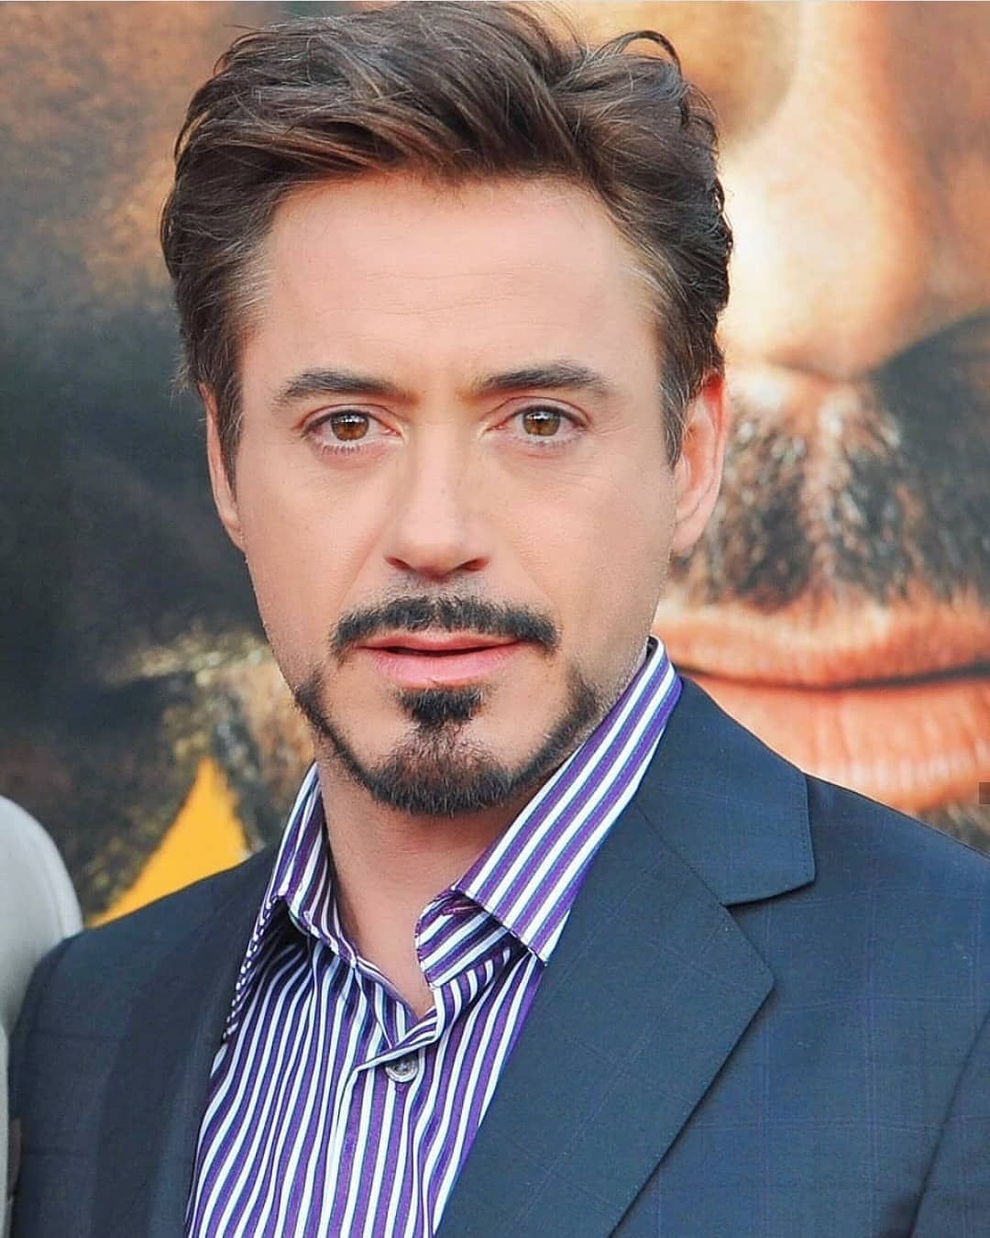 Người sắt" Robert Downey Jr. đóng phim do Kim Lý sản xuất | Báo Dân trí